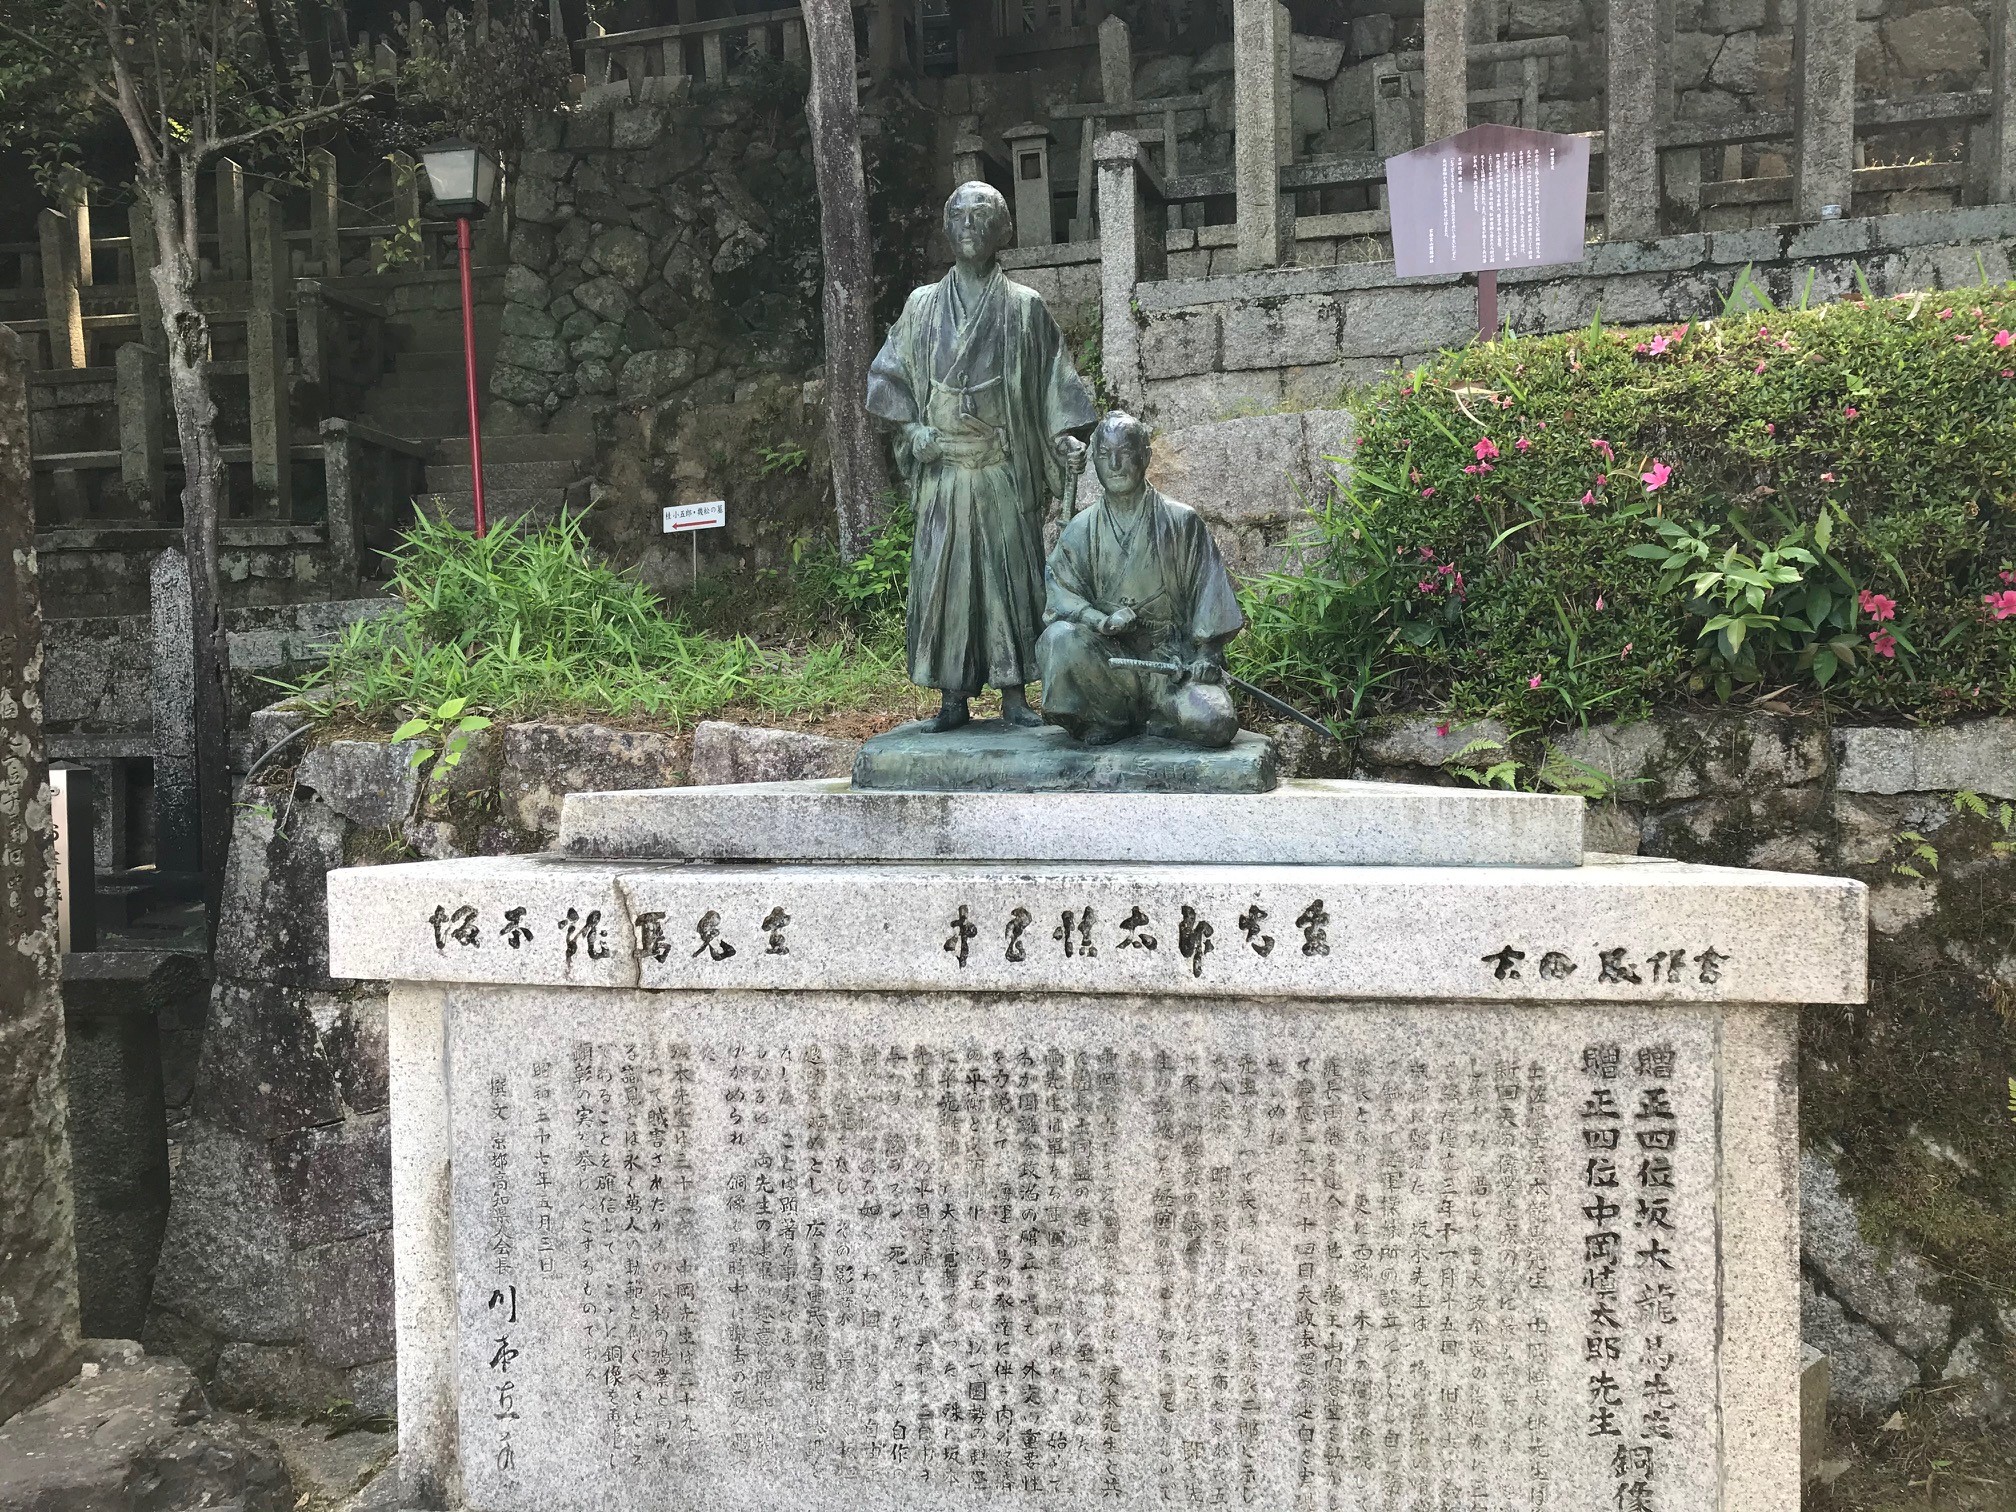 京都霊山護国神社 維新の道 を経て坂本龍馬と桂小五郎のお墓参りへ 京都はんなりずむ